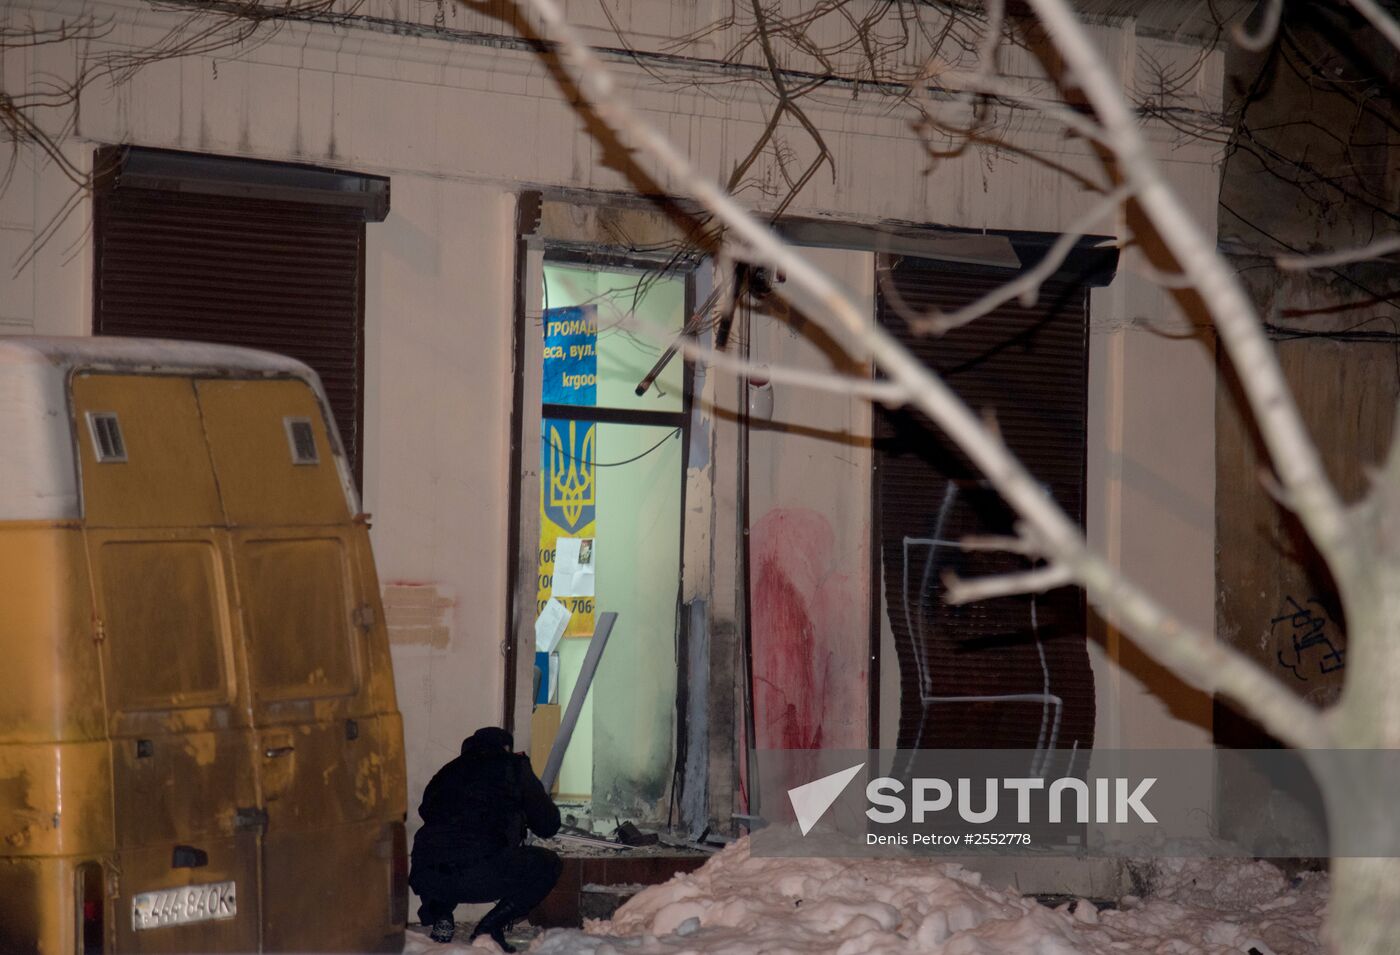 Volunteer center blown up in Odessa